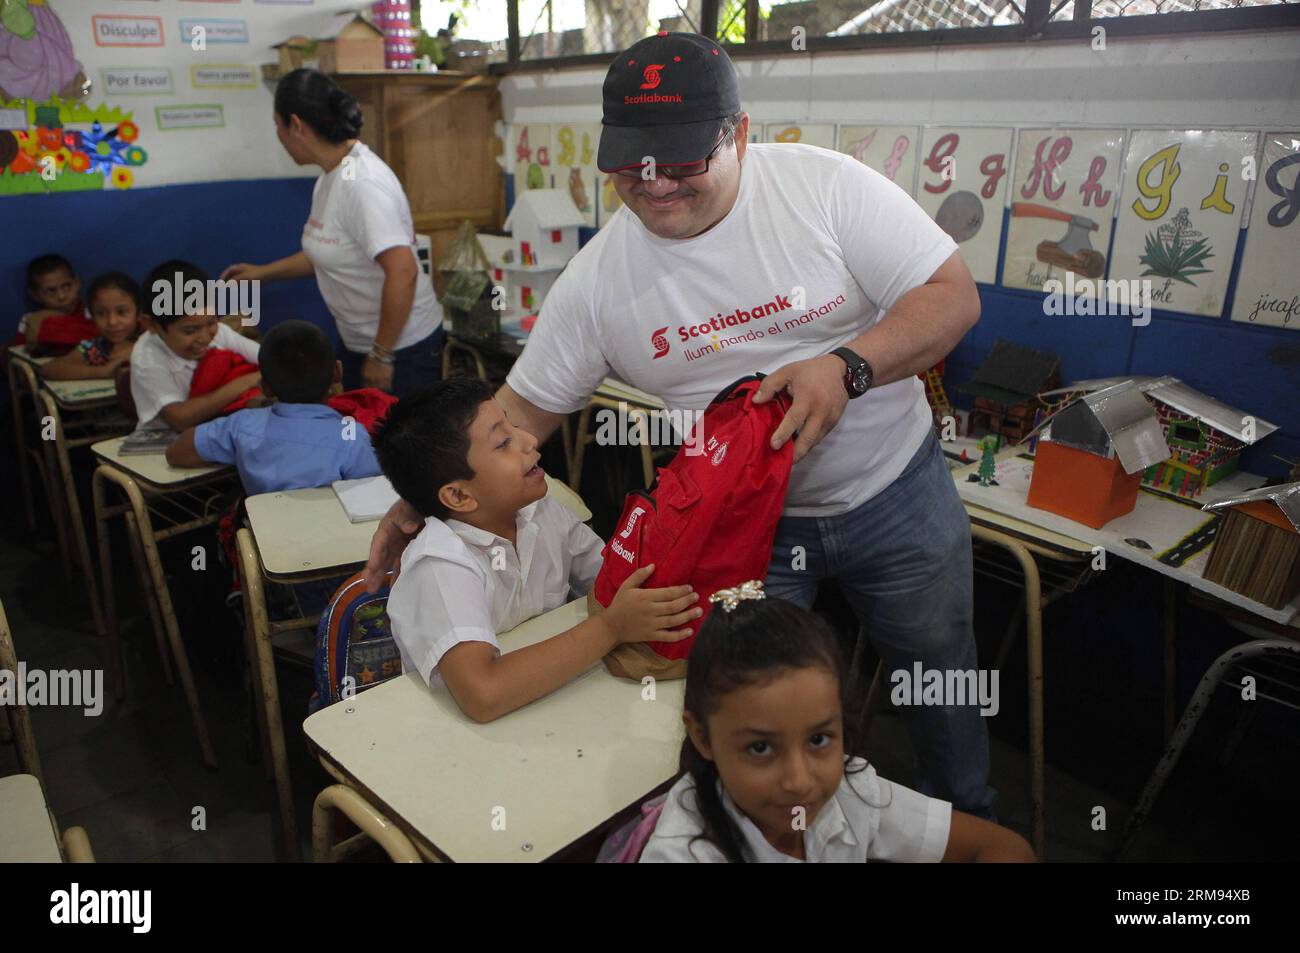 Des bénévoles d’une agence bancaire participent à une livraison de sacs à dos aux enfants d’une institution éducative, dans le cadre d’une initiative visant à contribuer au processus éducatif dans la municipalité d’Izalco, dans le département de Sonsonate, à 65 km à l’ouest de San Salvador, capitale du Salvador, le 7 mai 2014. (Xinhua/Oscar Rivera) (rt) EL SALVADOR-IZALCO-SOCIETY-VOLUNTEERS PUBLICATIONxNOTxINxCHN les volontaires d'une agence bancaire participent à une livraison de sac à dos aux enfants de l'institution éducative dans le cadre de l'Initiative pour contribuer au processus d'éducation dans la municipalité dans le Depar Banque D'Images